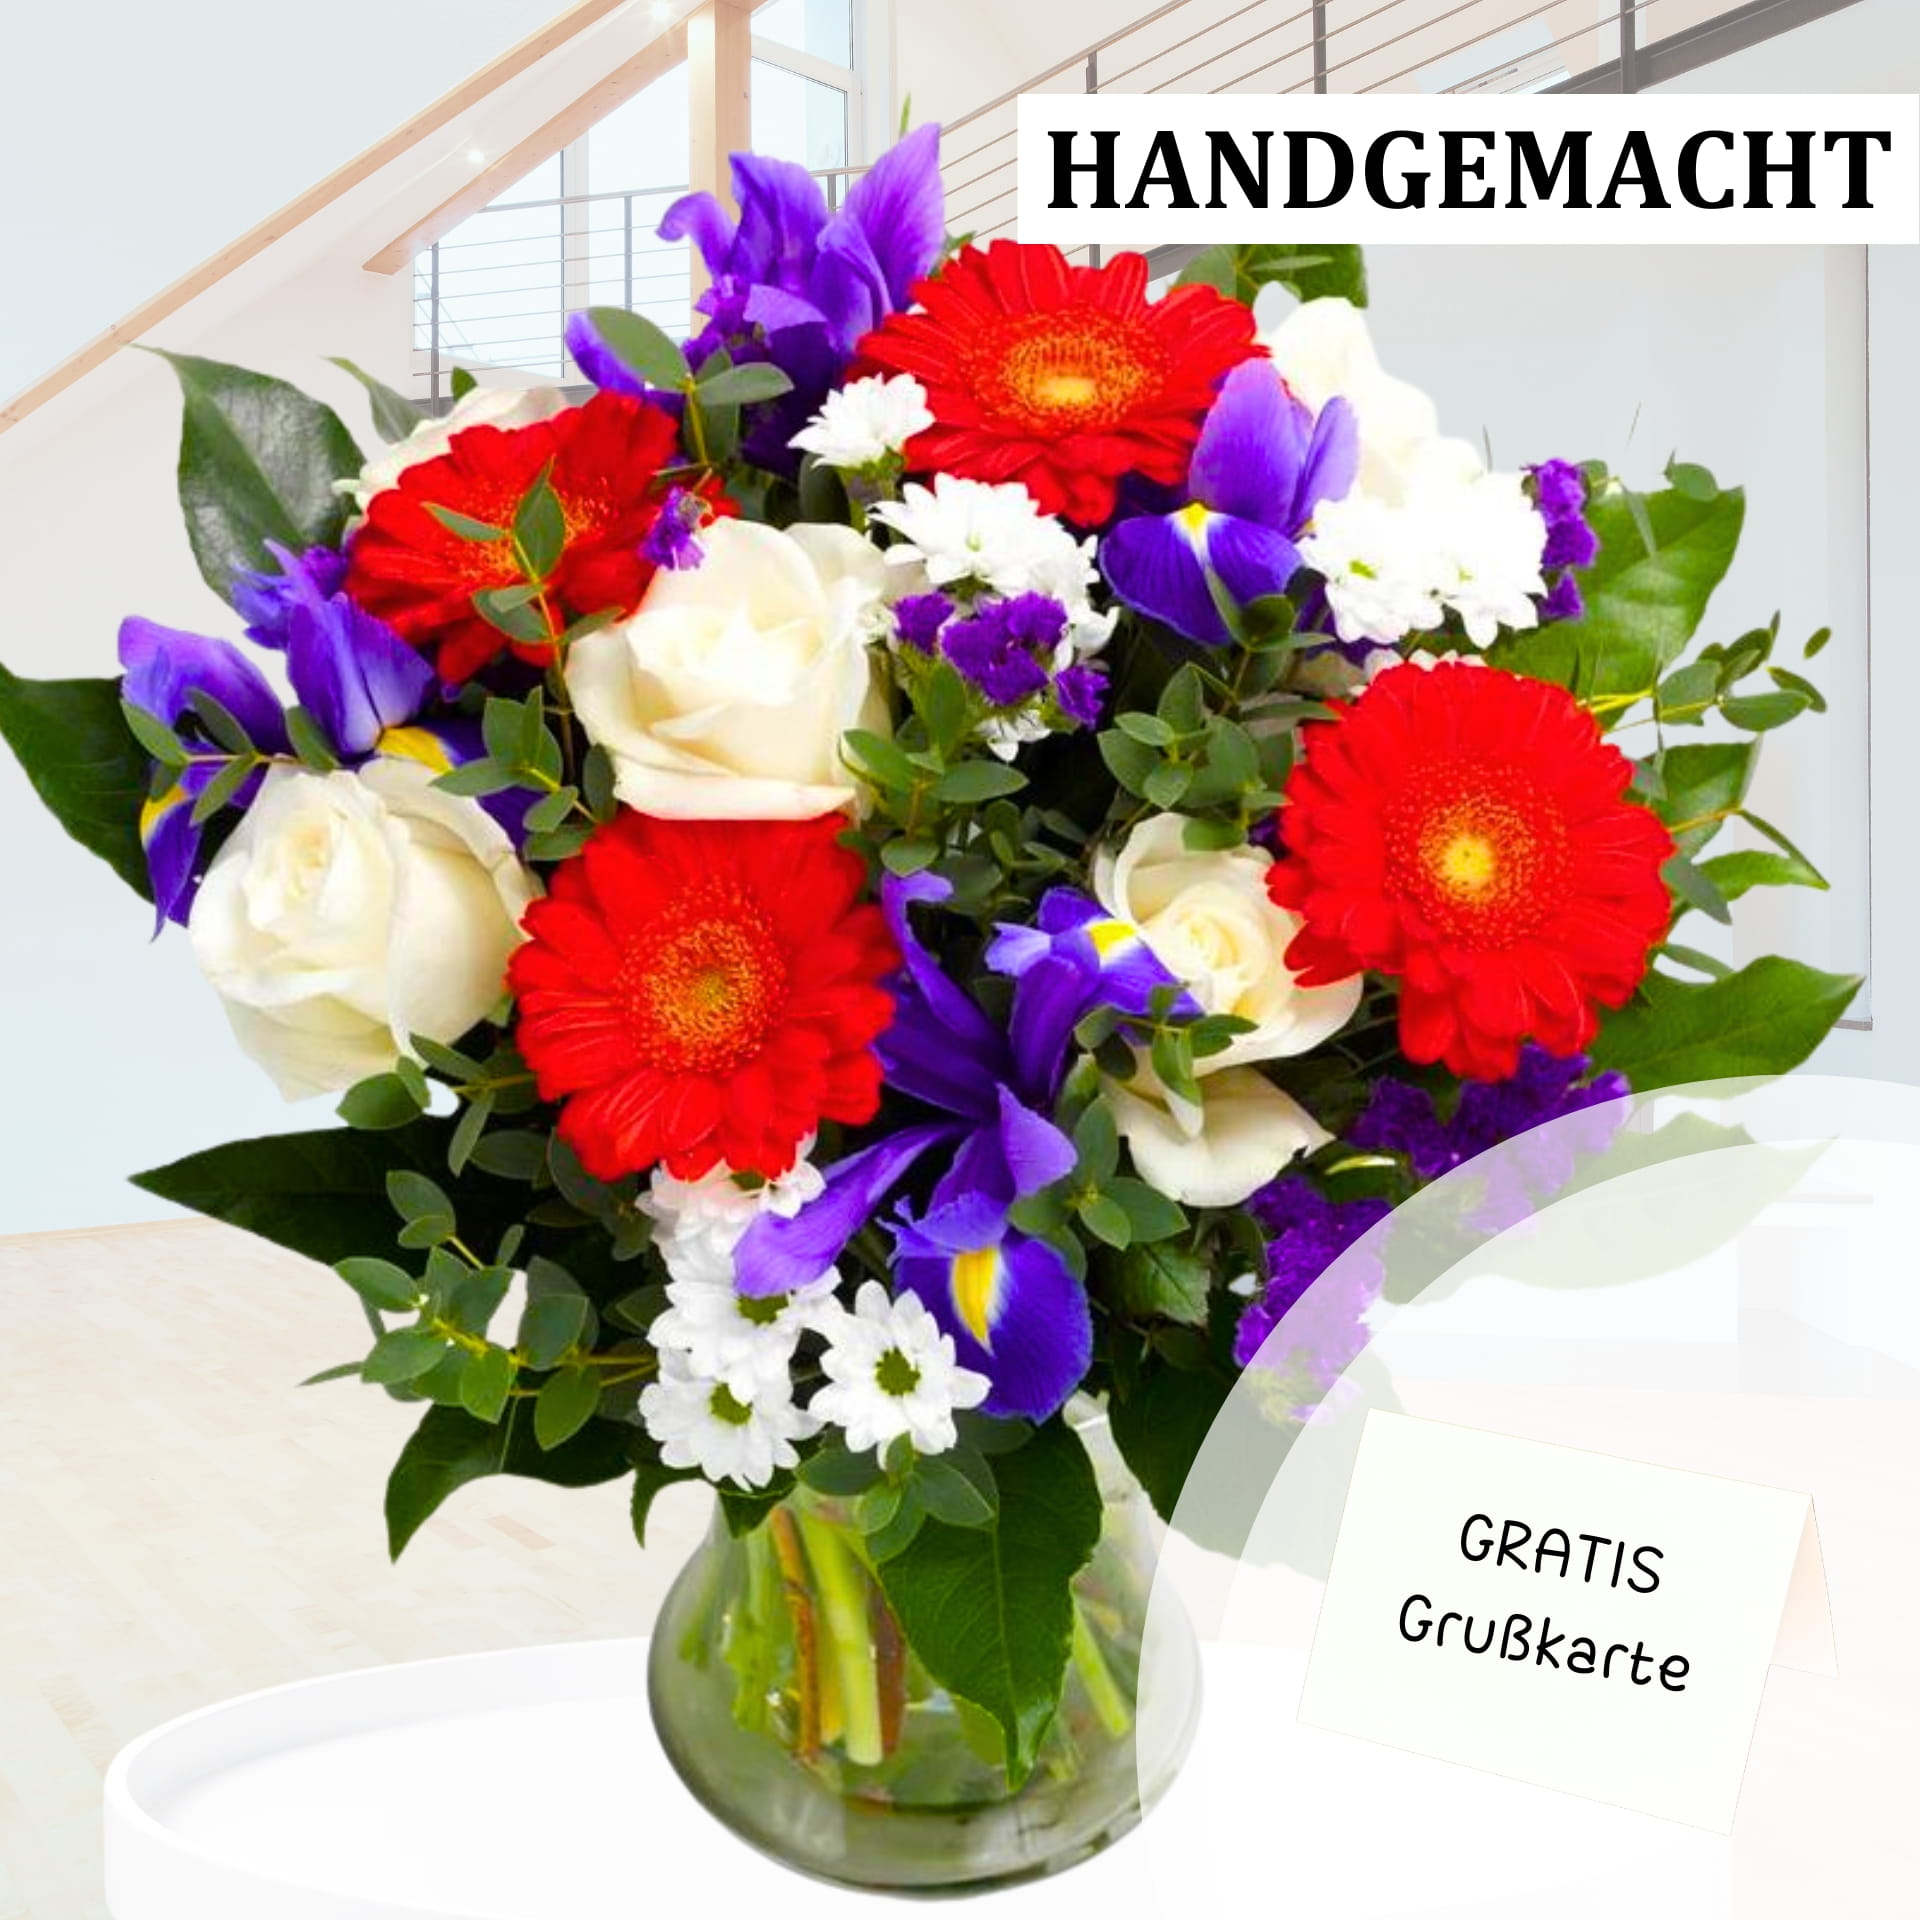 Detaillierter Blick auf einen handgemachten Blumenstrauß mit roten Gerbera, weißen Rosen und lila Iris, grünen Blättern und weißen Gänseblümchen, inklusive Grußkarte